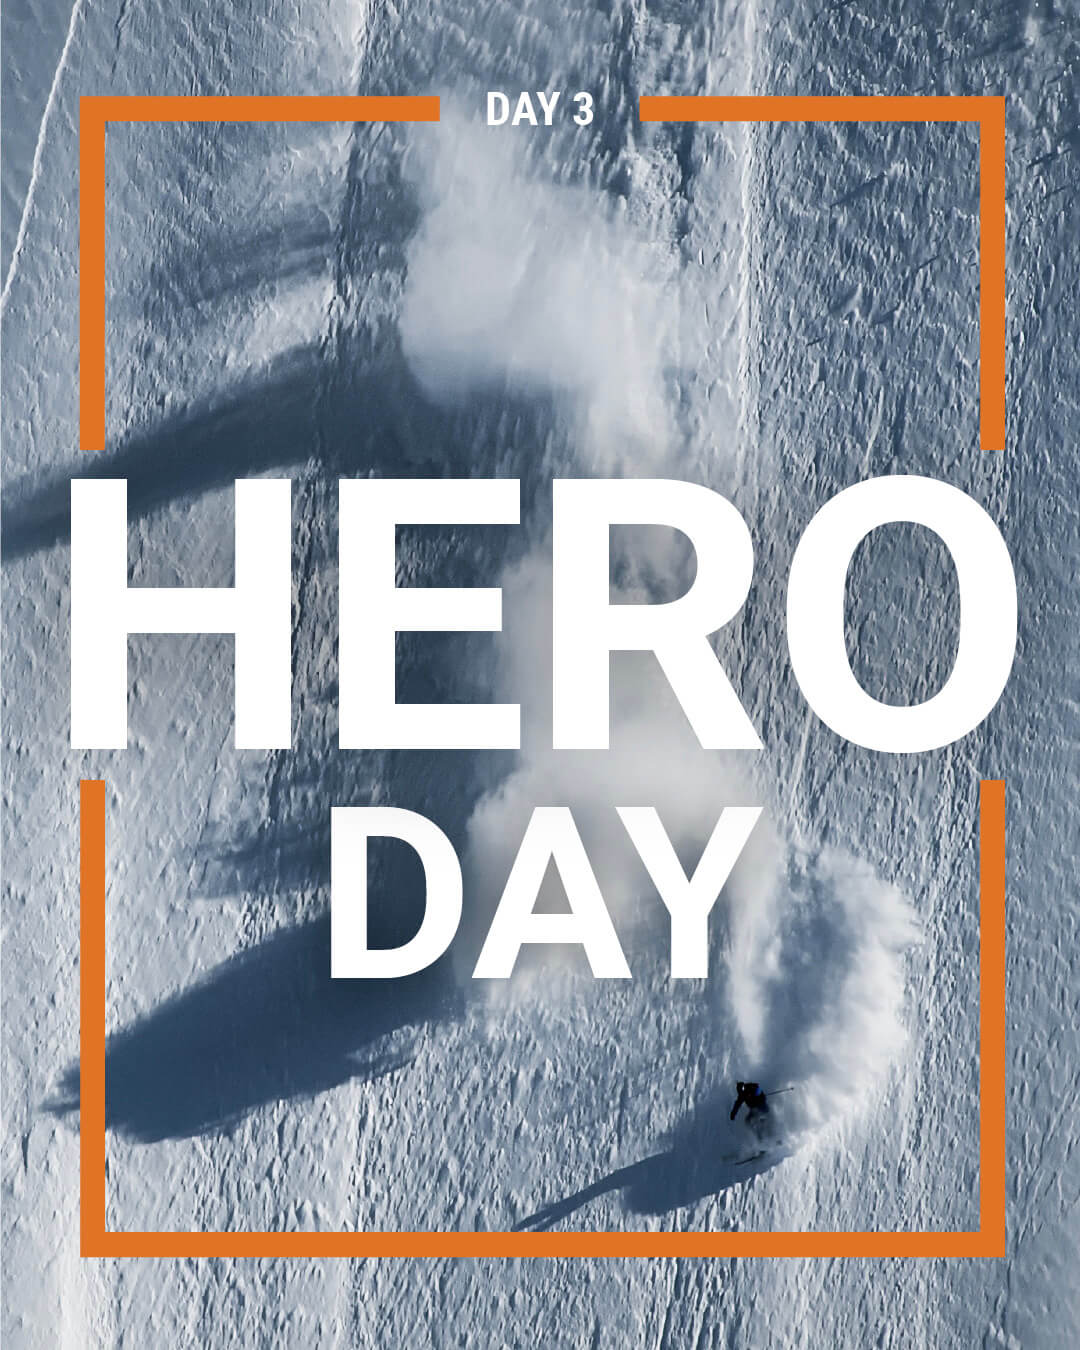 Day 3 - Hero Day